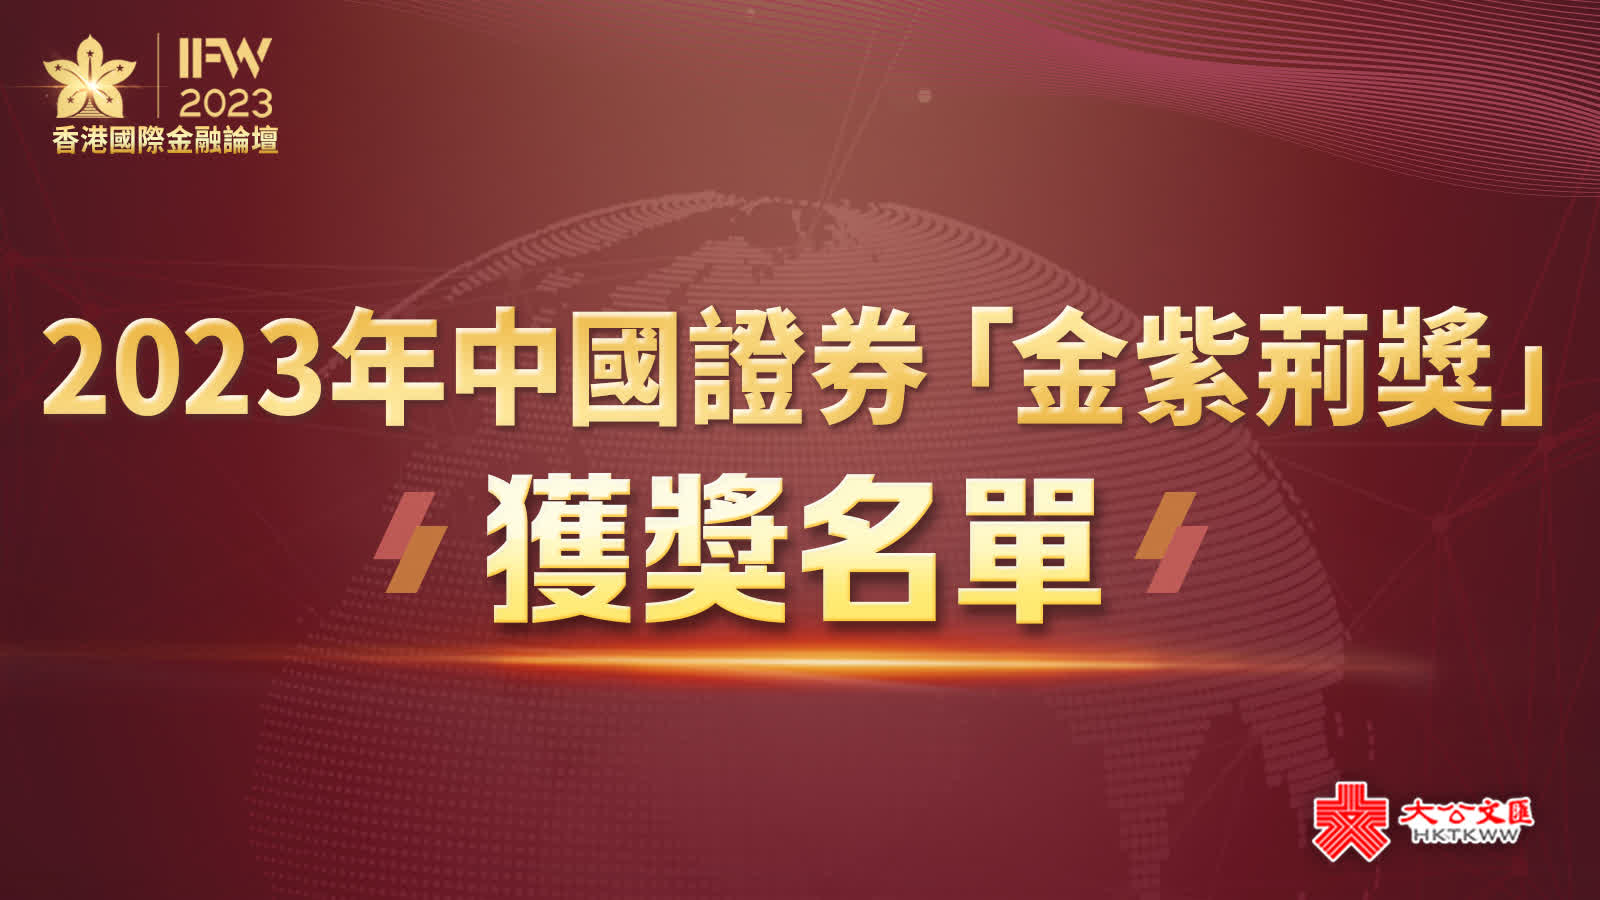 2023中國證券「金紫荊獎」獲獎名單